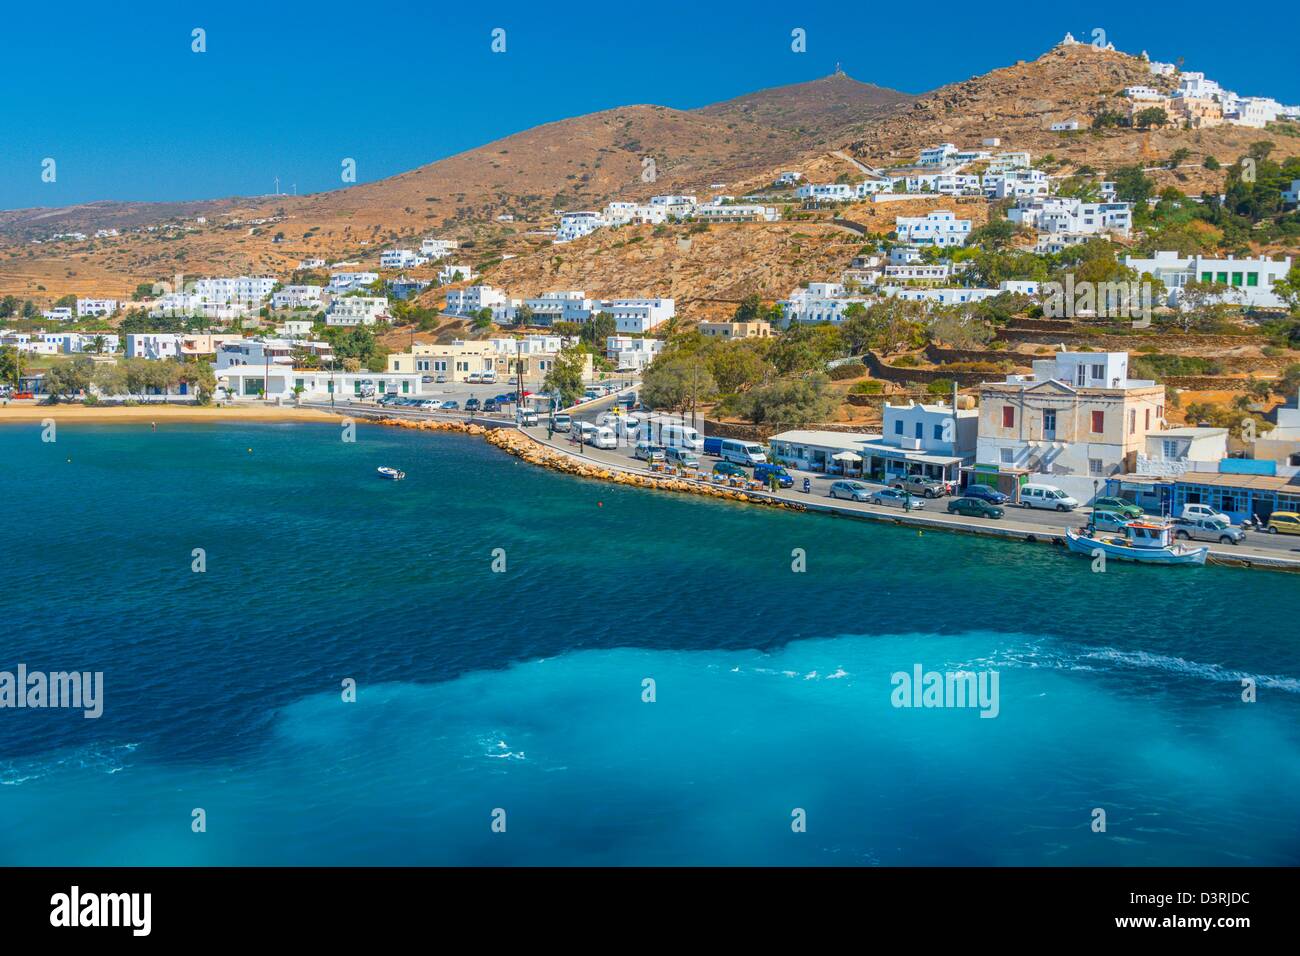 Von Athen nehmen Sie eine Fähre zu besuchen ist griechische Inseln, Ios erste Anlaufstelle in der Reise durch die Ägäis Stockfoto